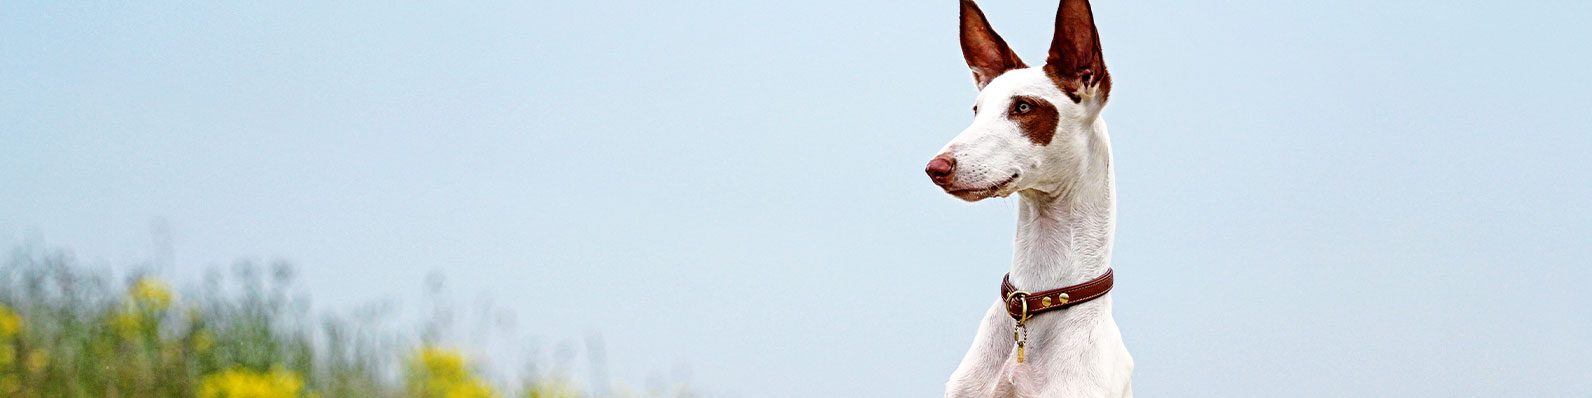 Perro peruano y sus beneficios para personas con asma